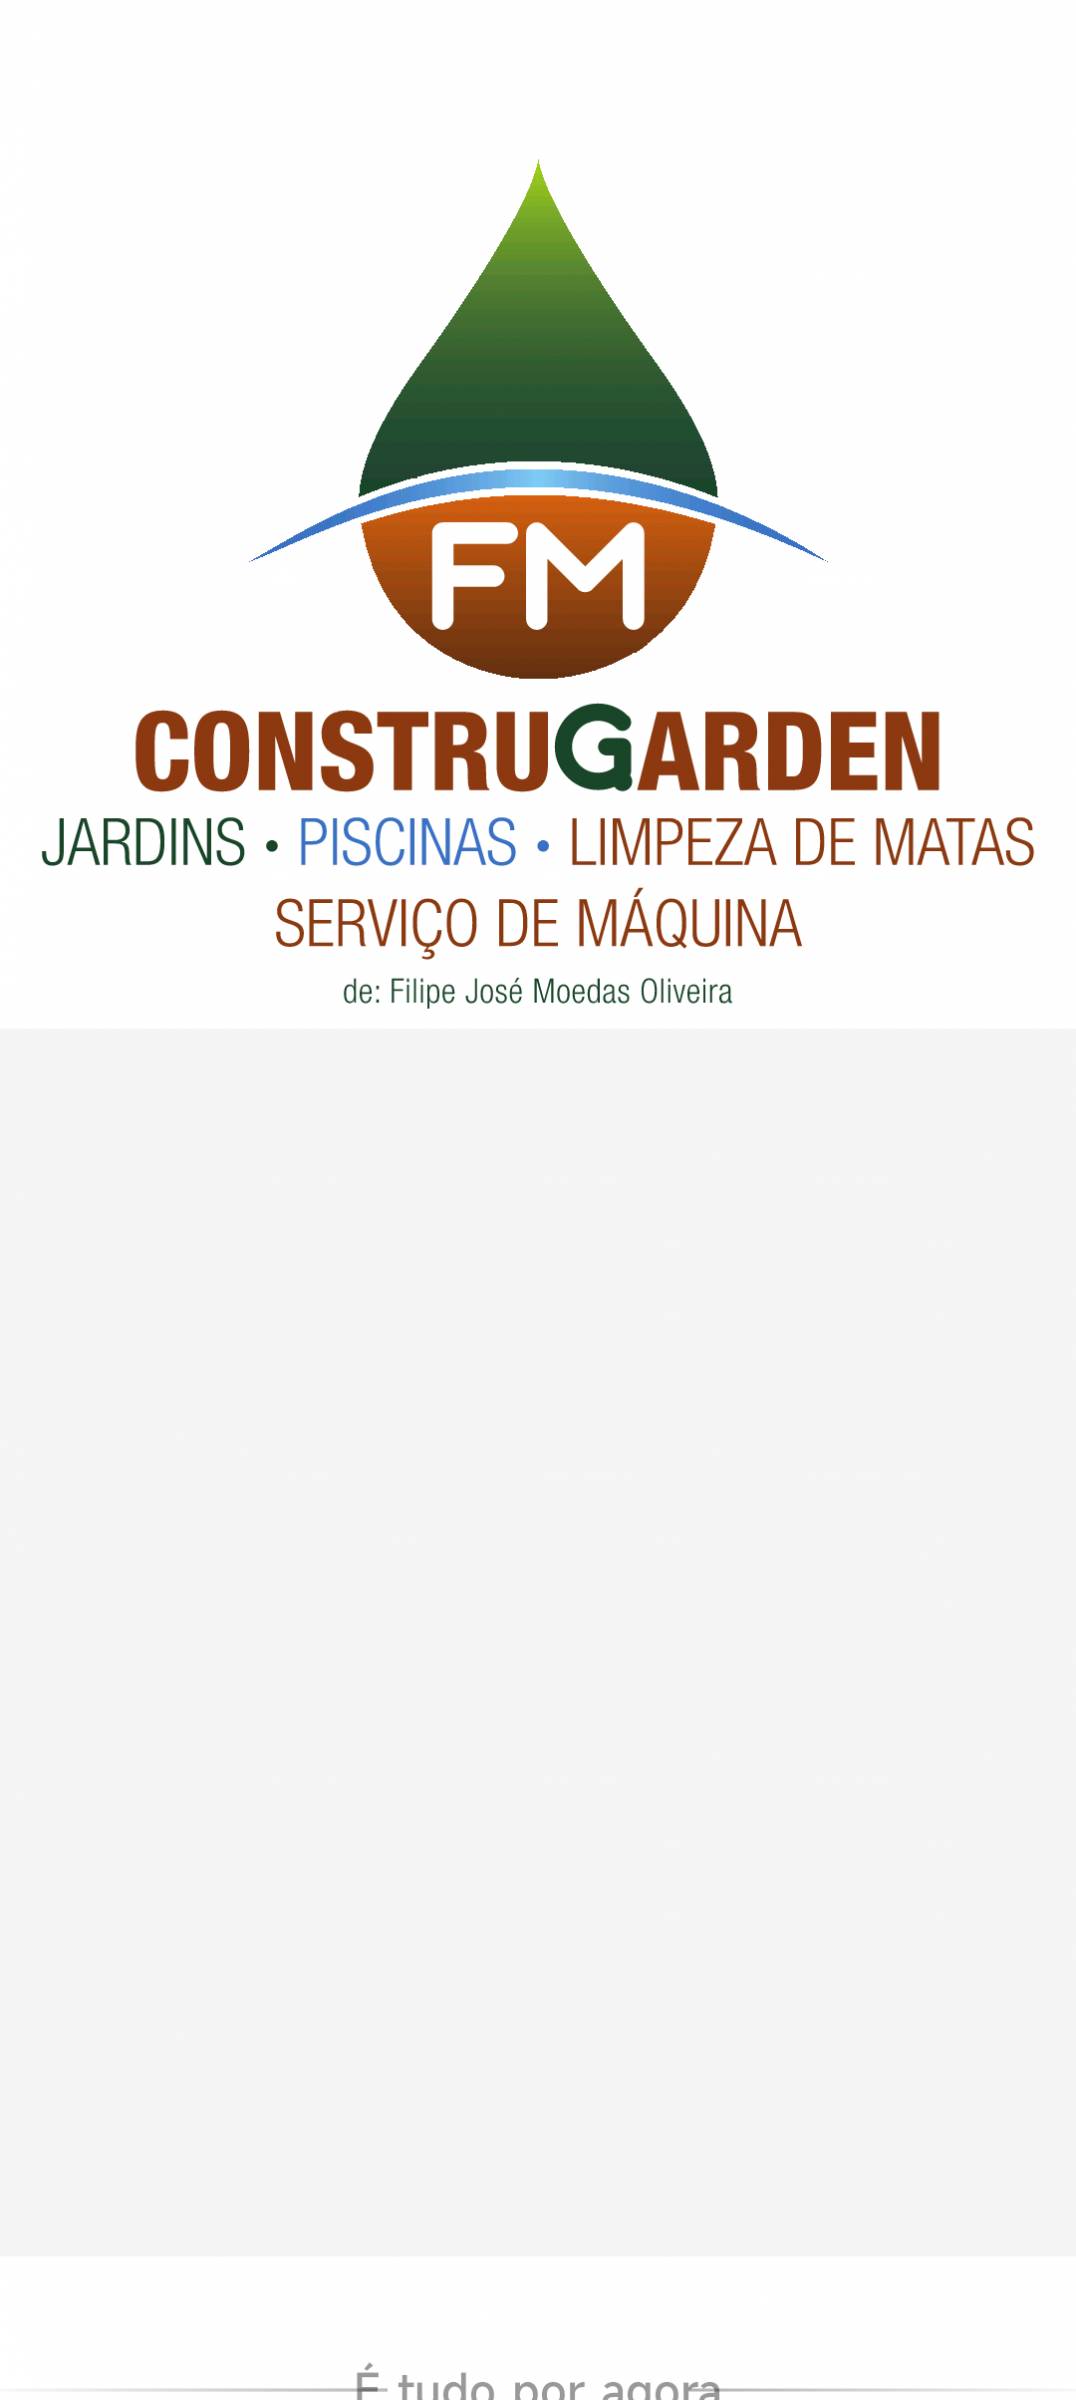 FM Construgarden - Mafra - Poda e Manutenção de Árvores